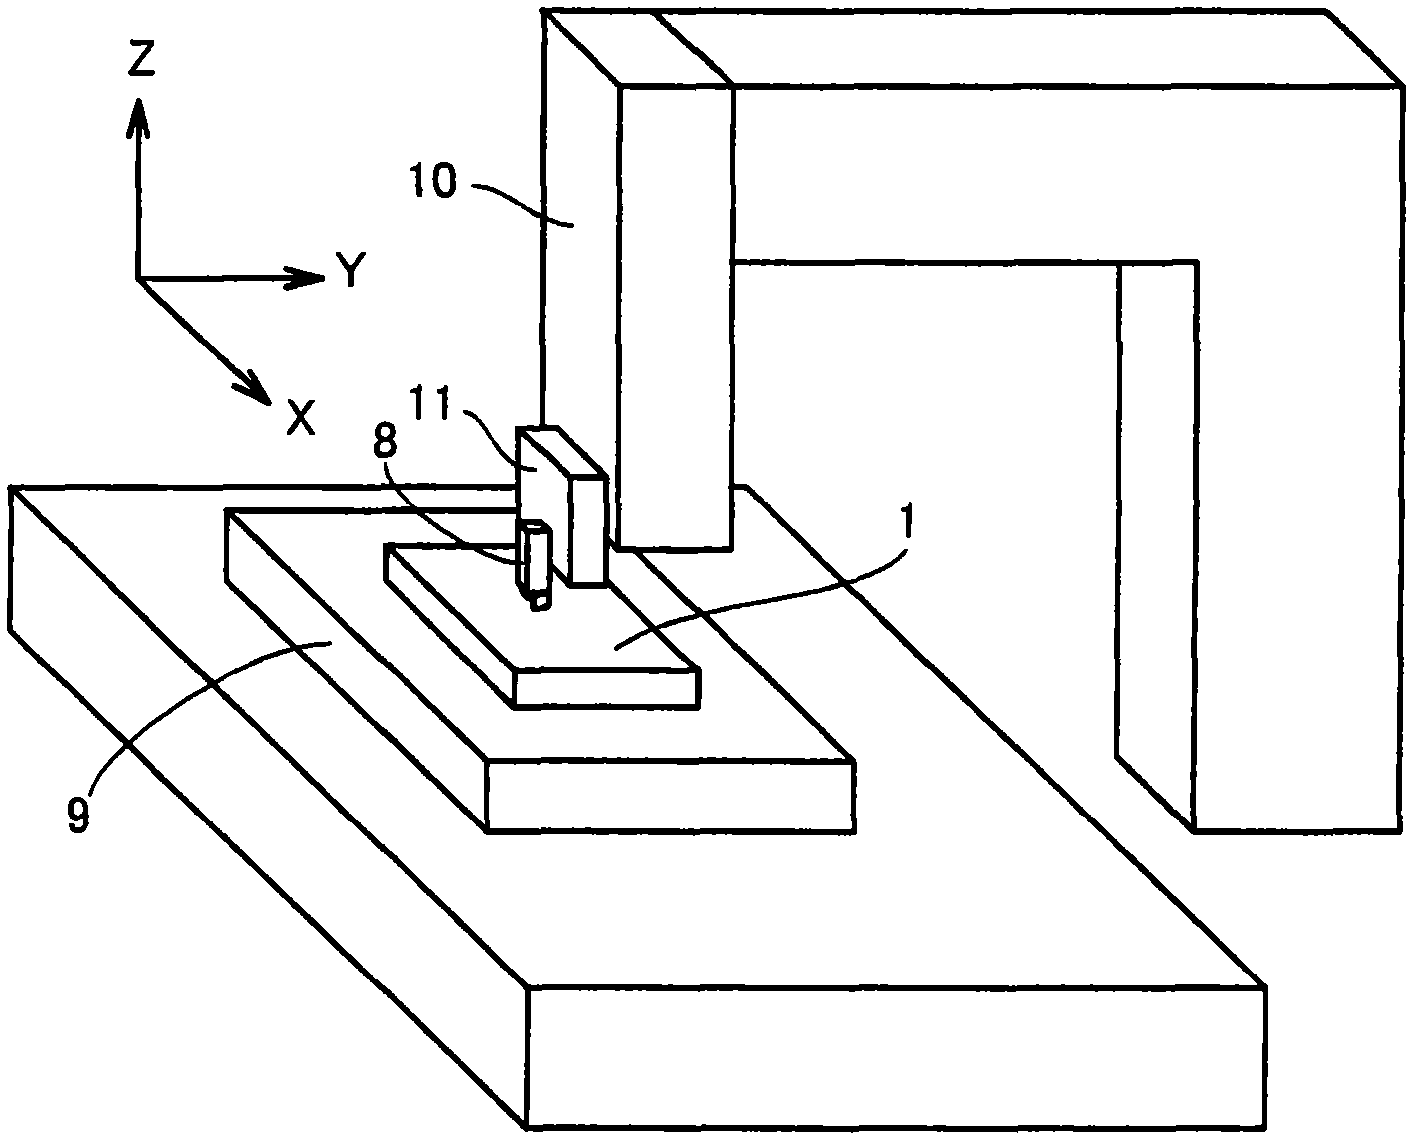 Method of manufacturing antiglare film and method of manufacturing mold thereof